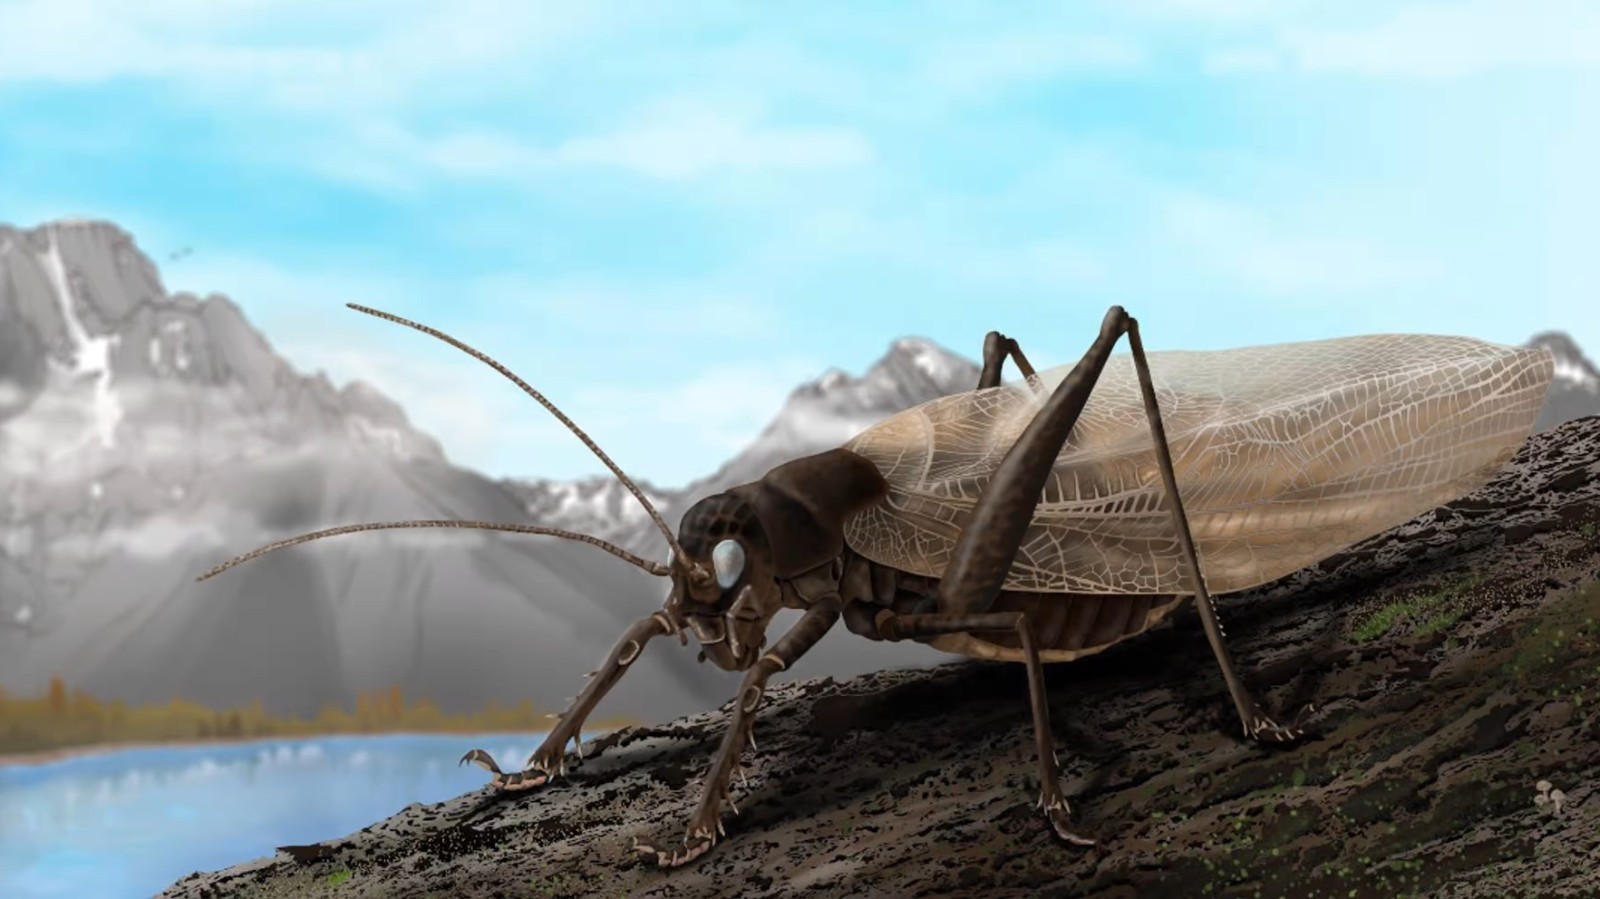 Ученые воссоздали песню давно потерянного насекомого, чтобы снова его найти